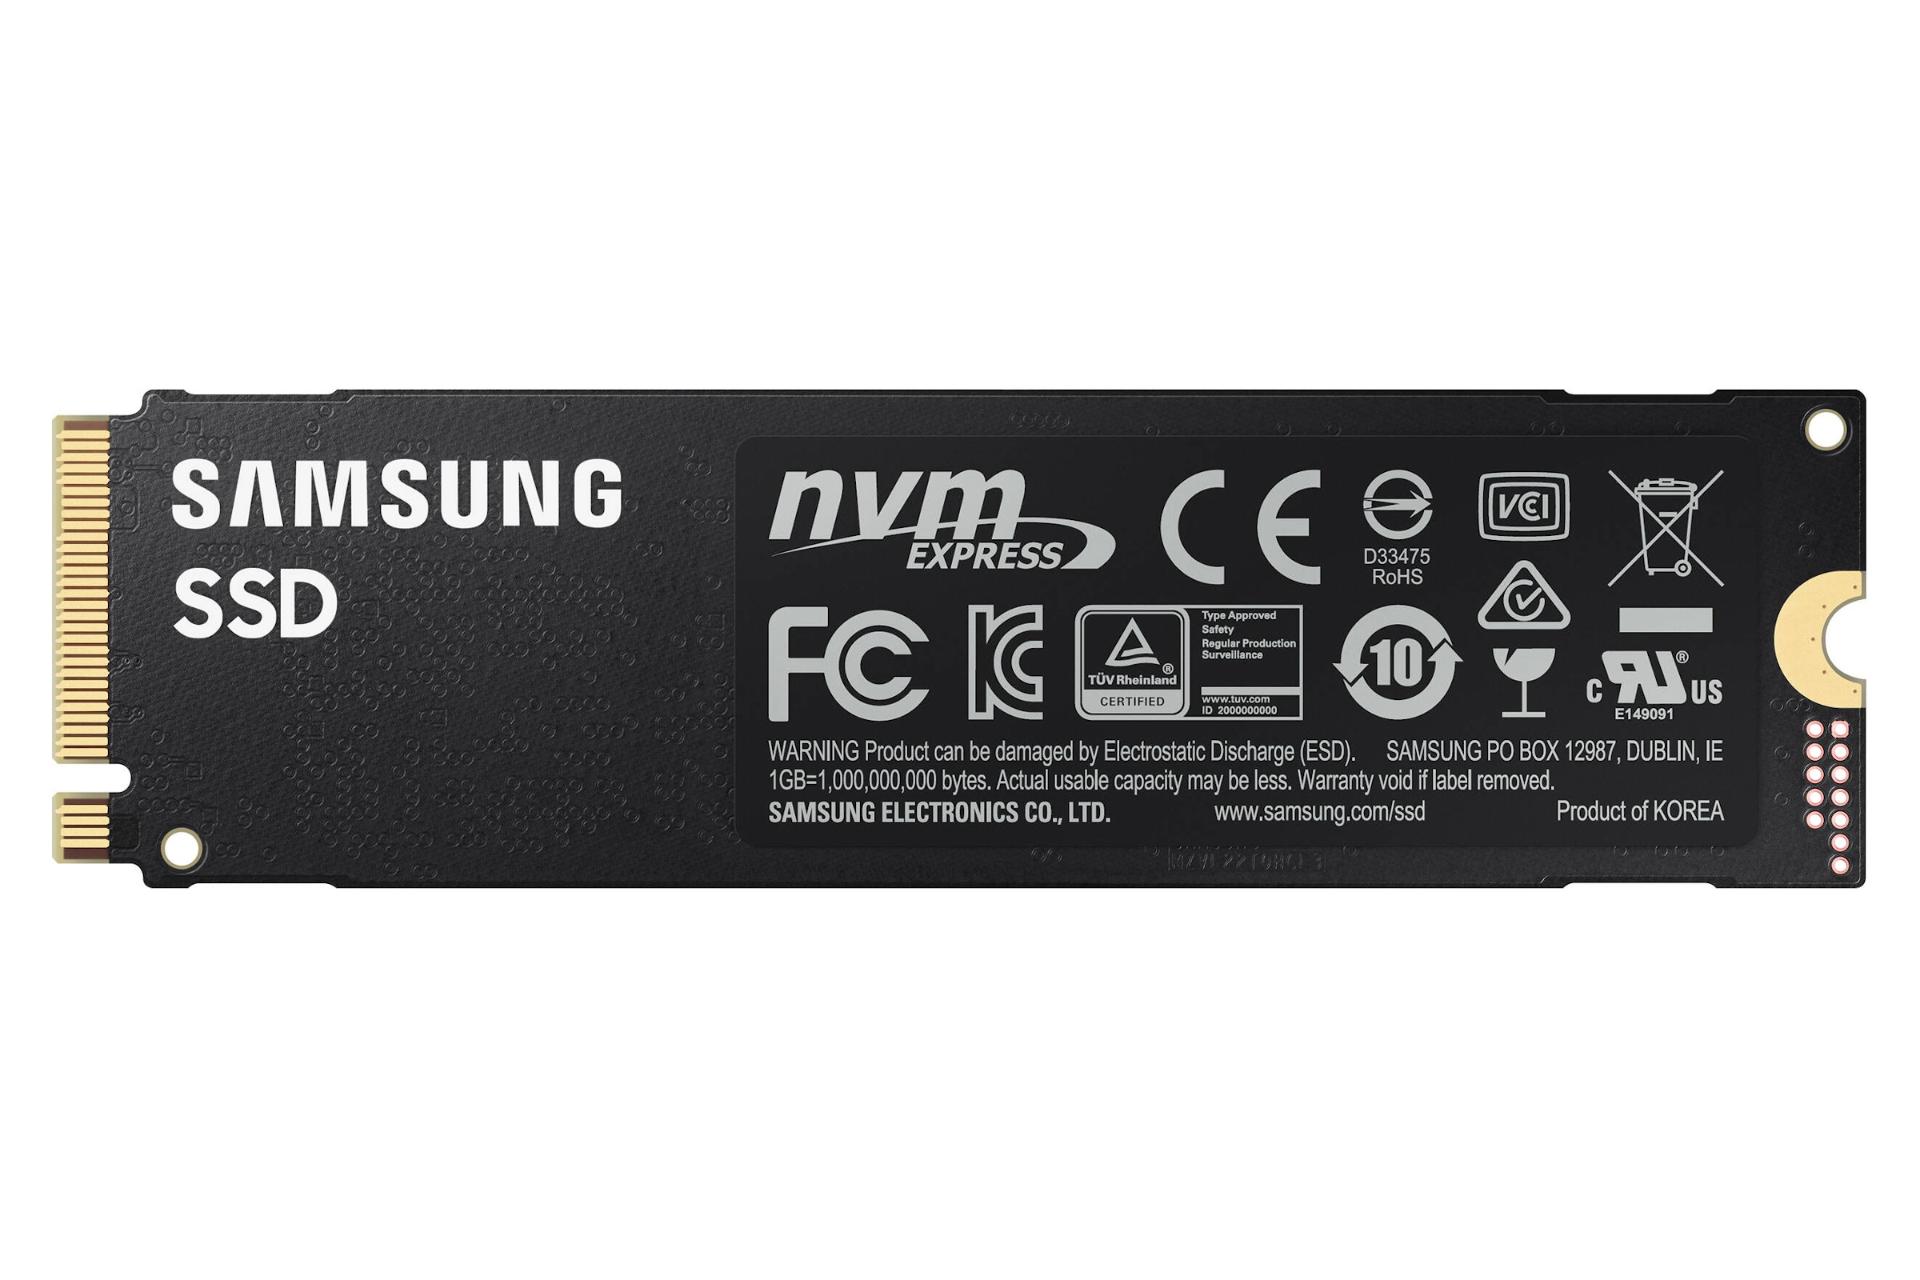 مرجع متخصصين ايران نماي پشت SSD سامسونگ 980 پرو NVMe M.2 Samsung 980 Pro